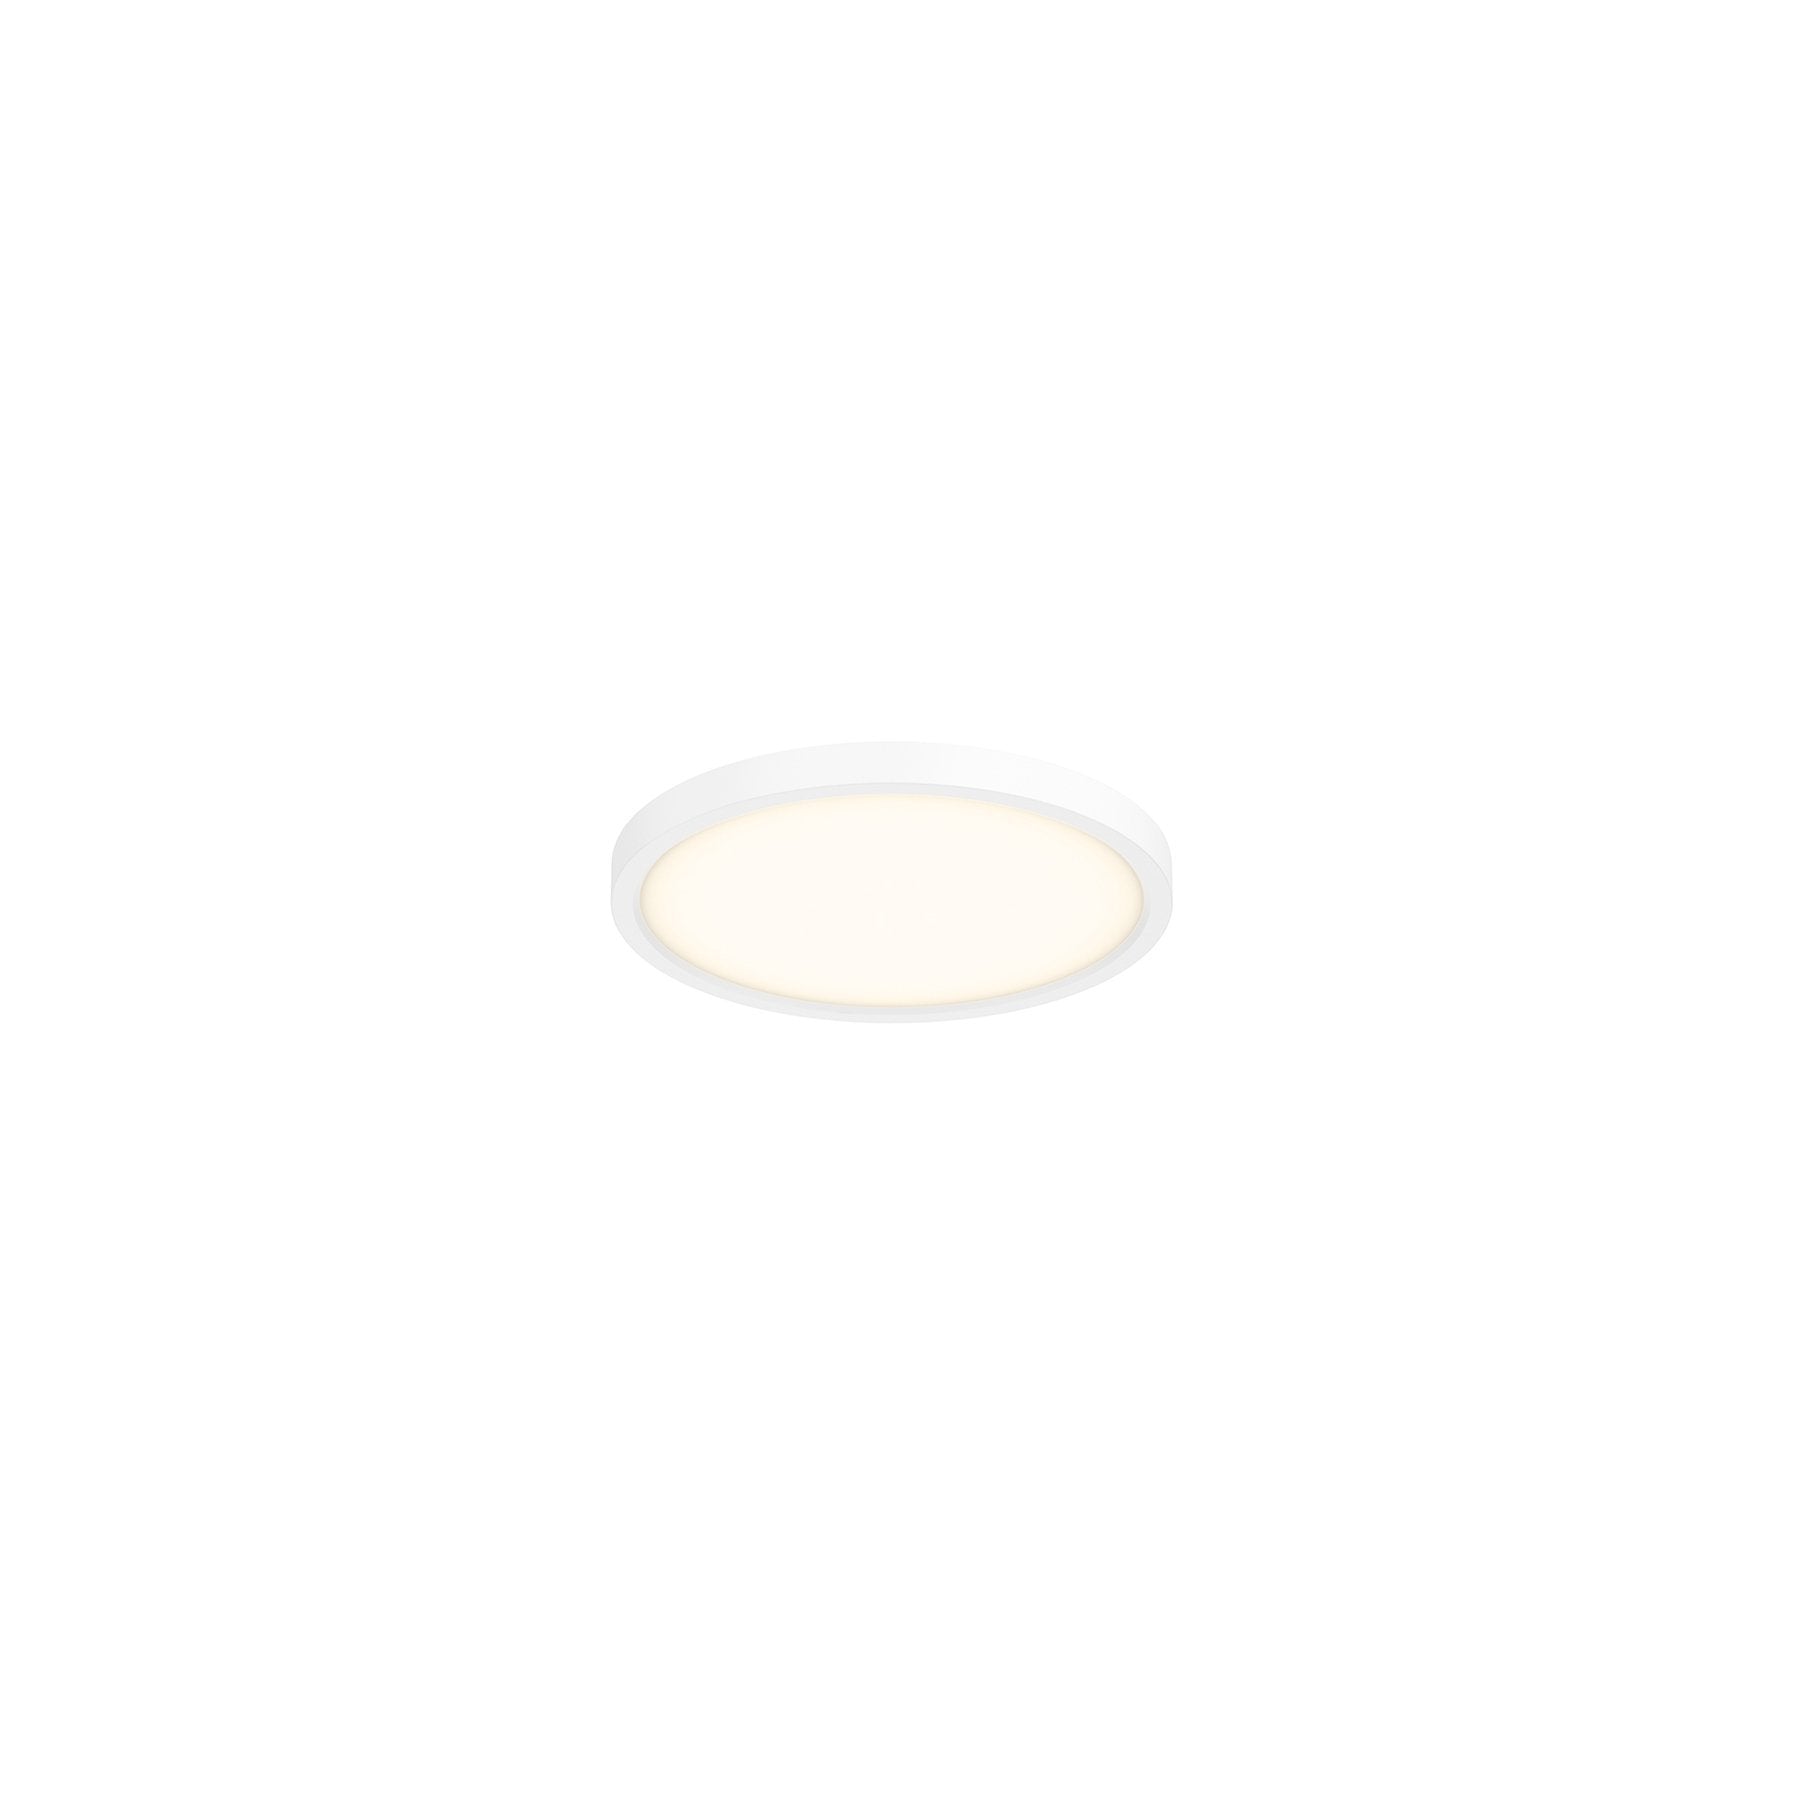 5 Inch Round LED Pro Flushmount, 3000K (Warm White), White Finish